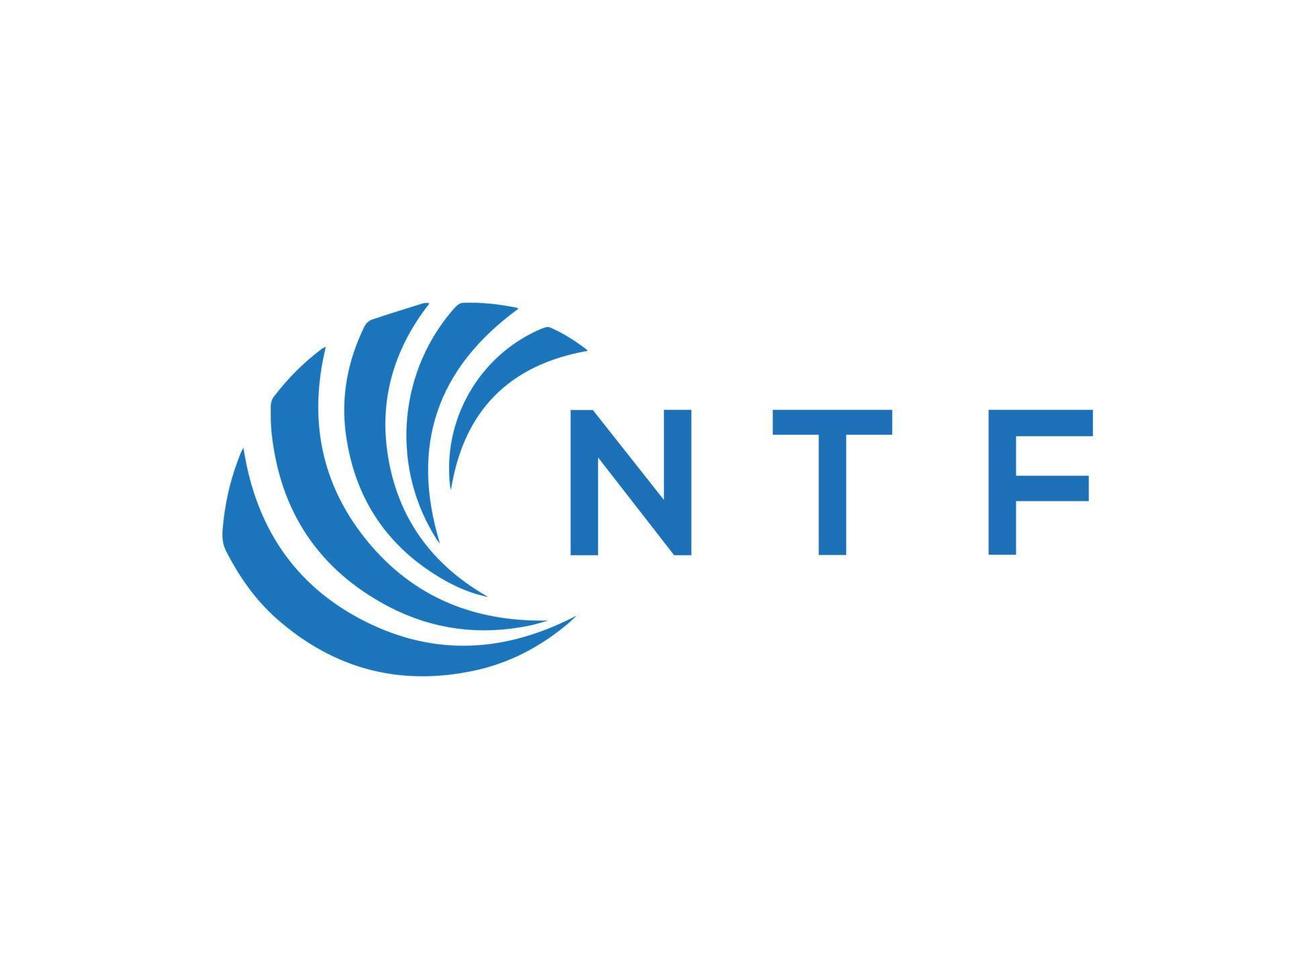 NTF letter logo design on white background. NTF c vector